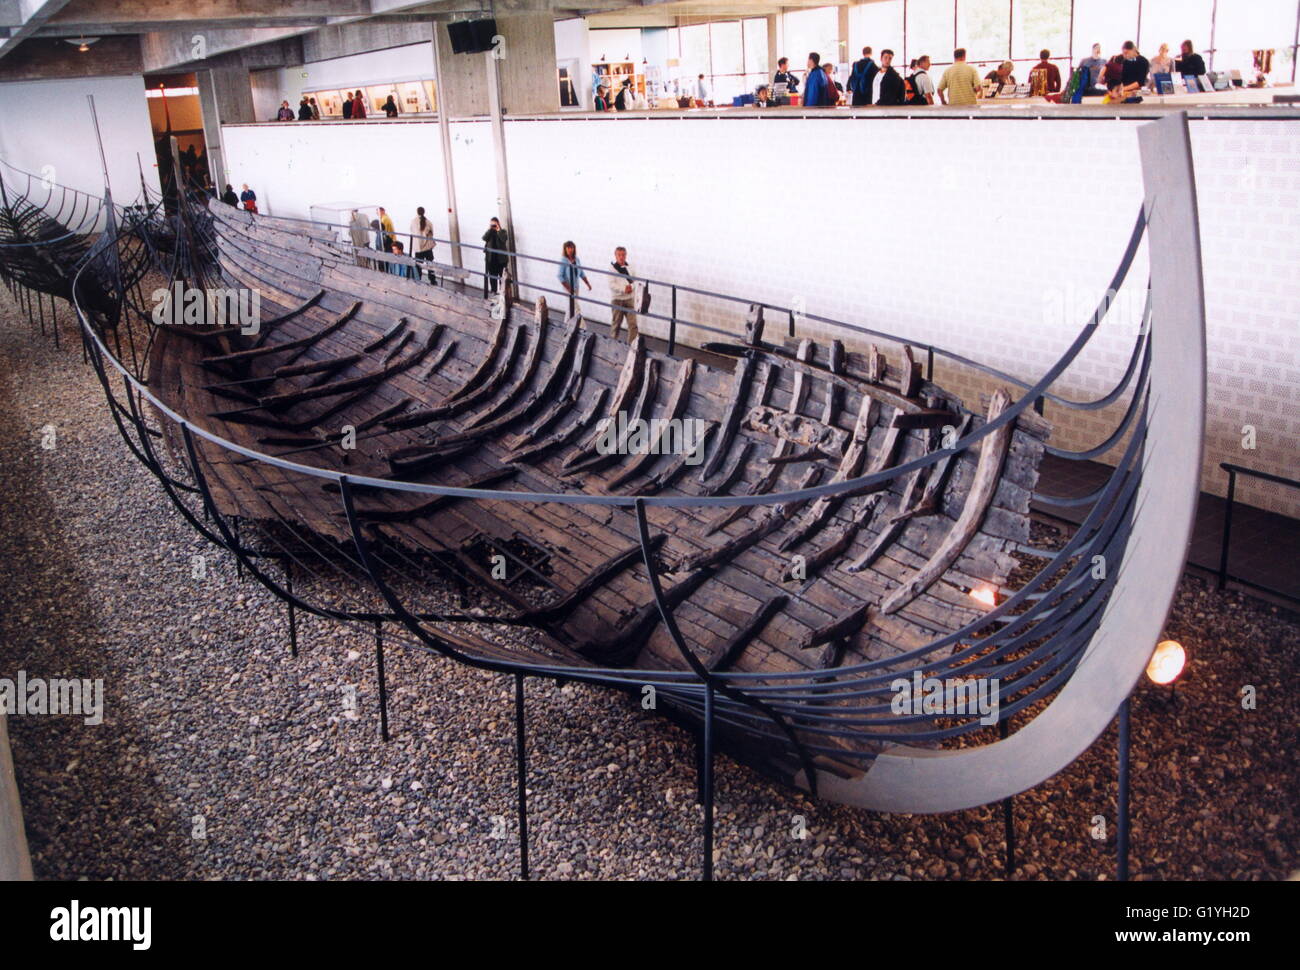 Barco vikingo en el museo Foto de stock